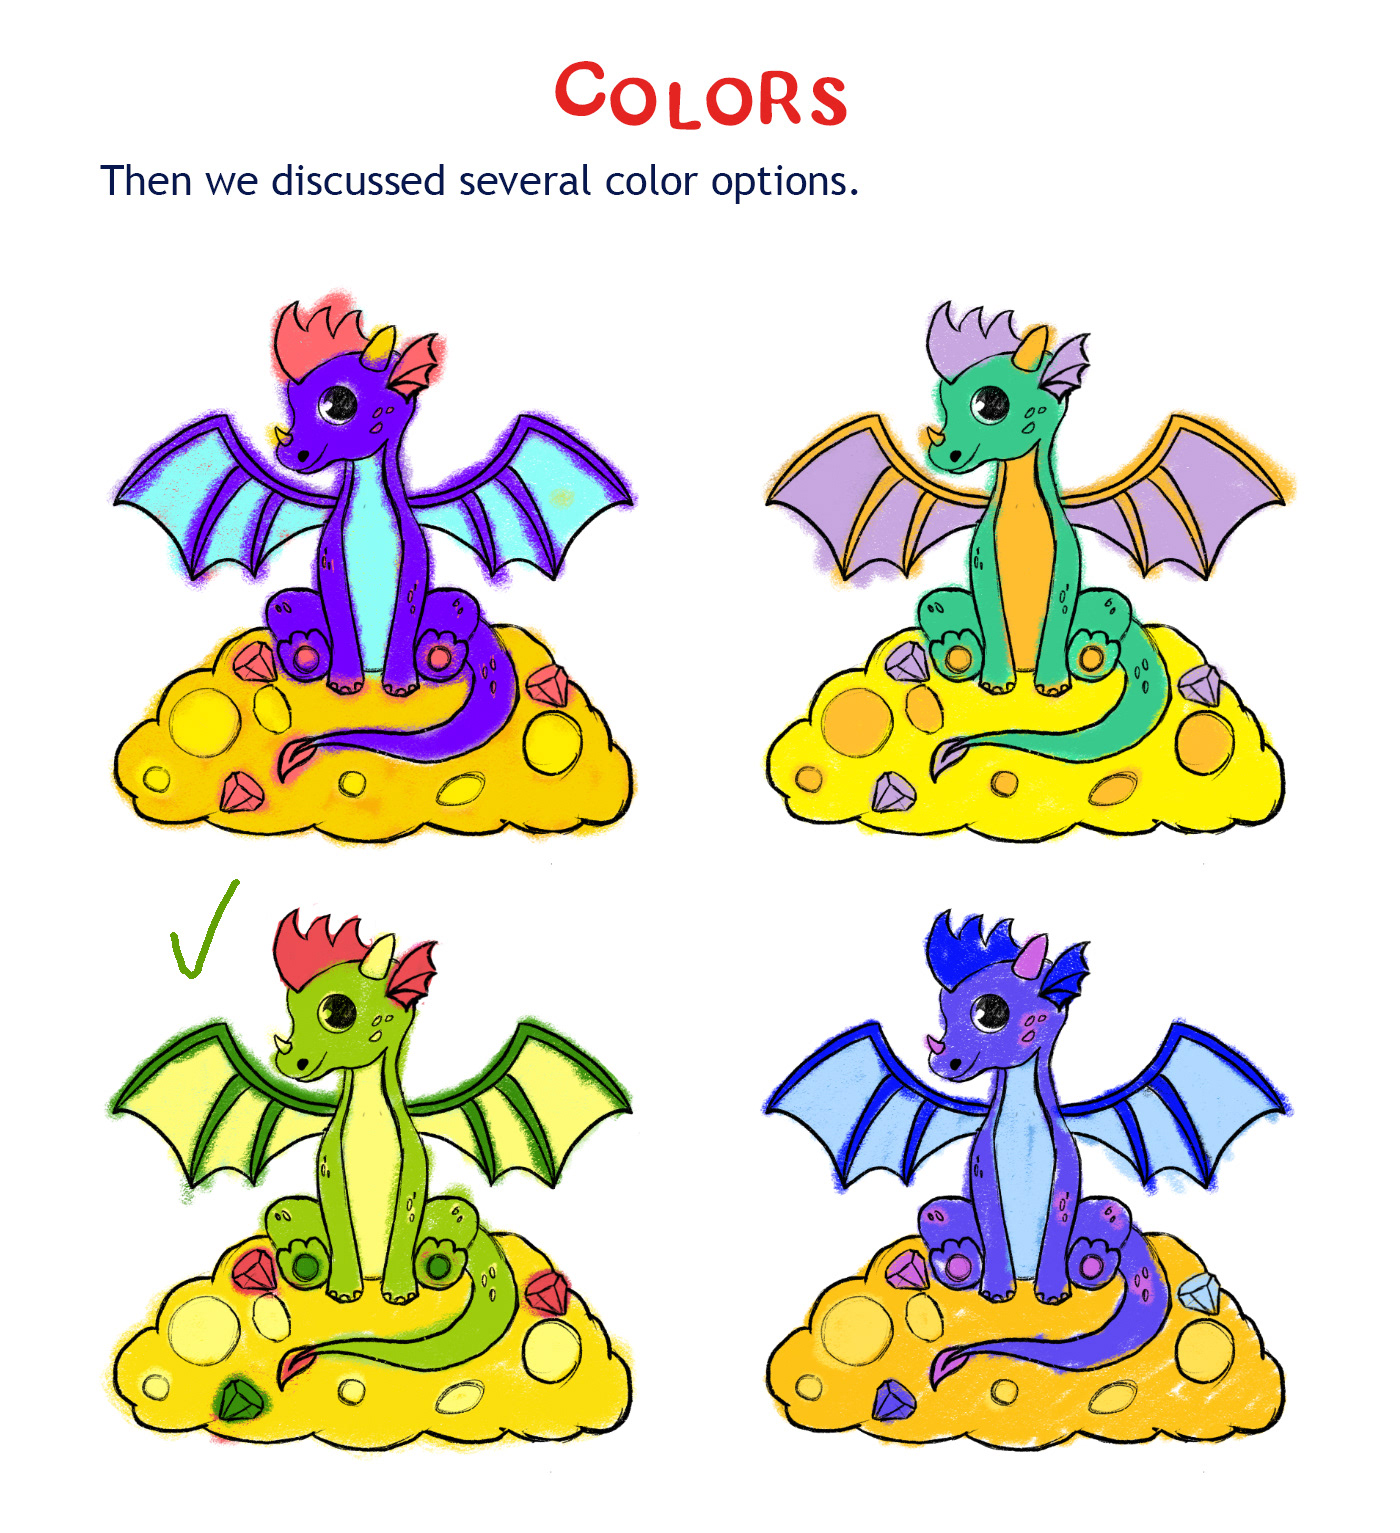 dragon Digital Art  Character design  Character ILLUSTRATION  children illustration cartoon digital illustration art digital